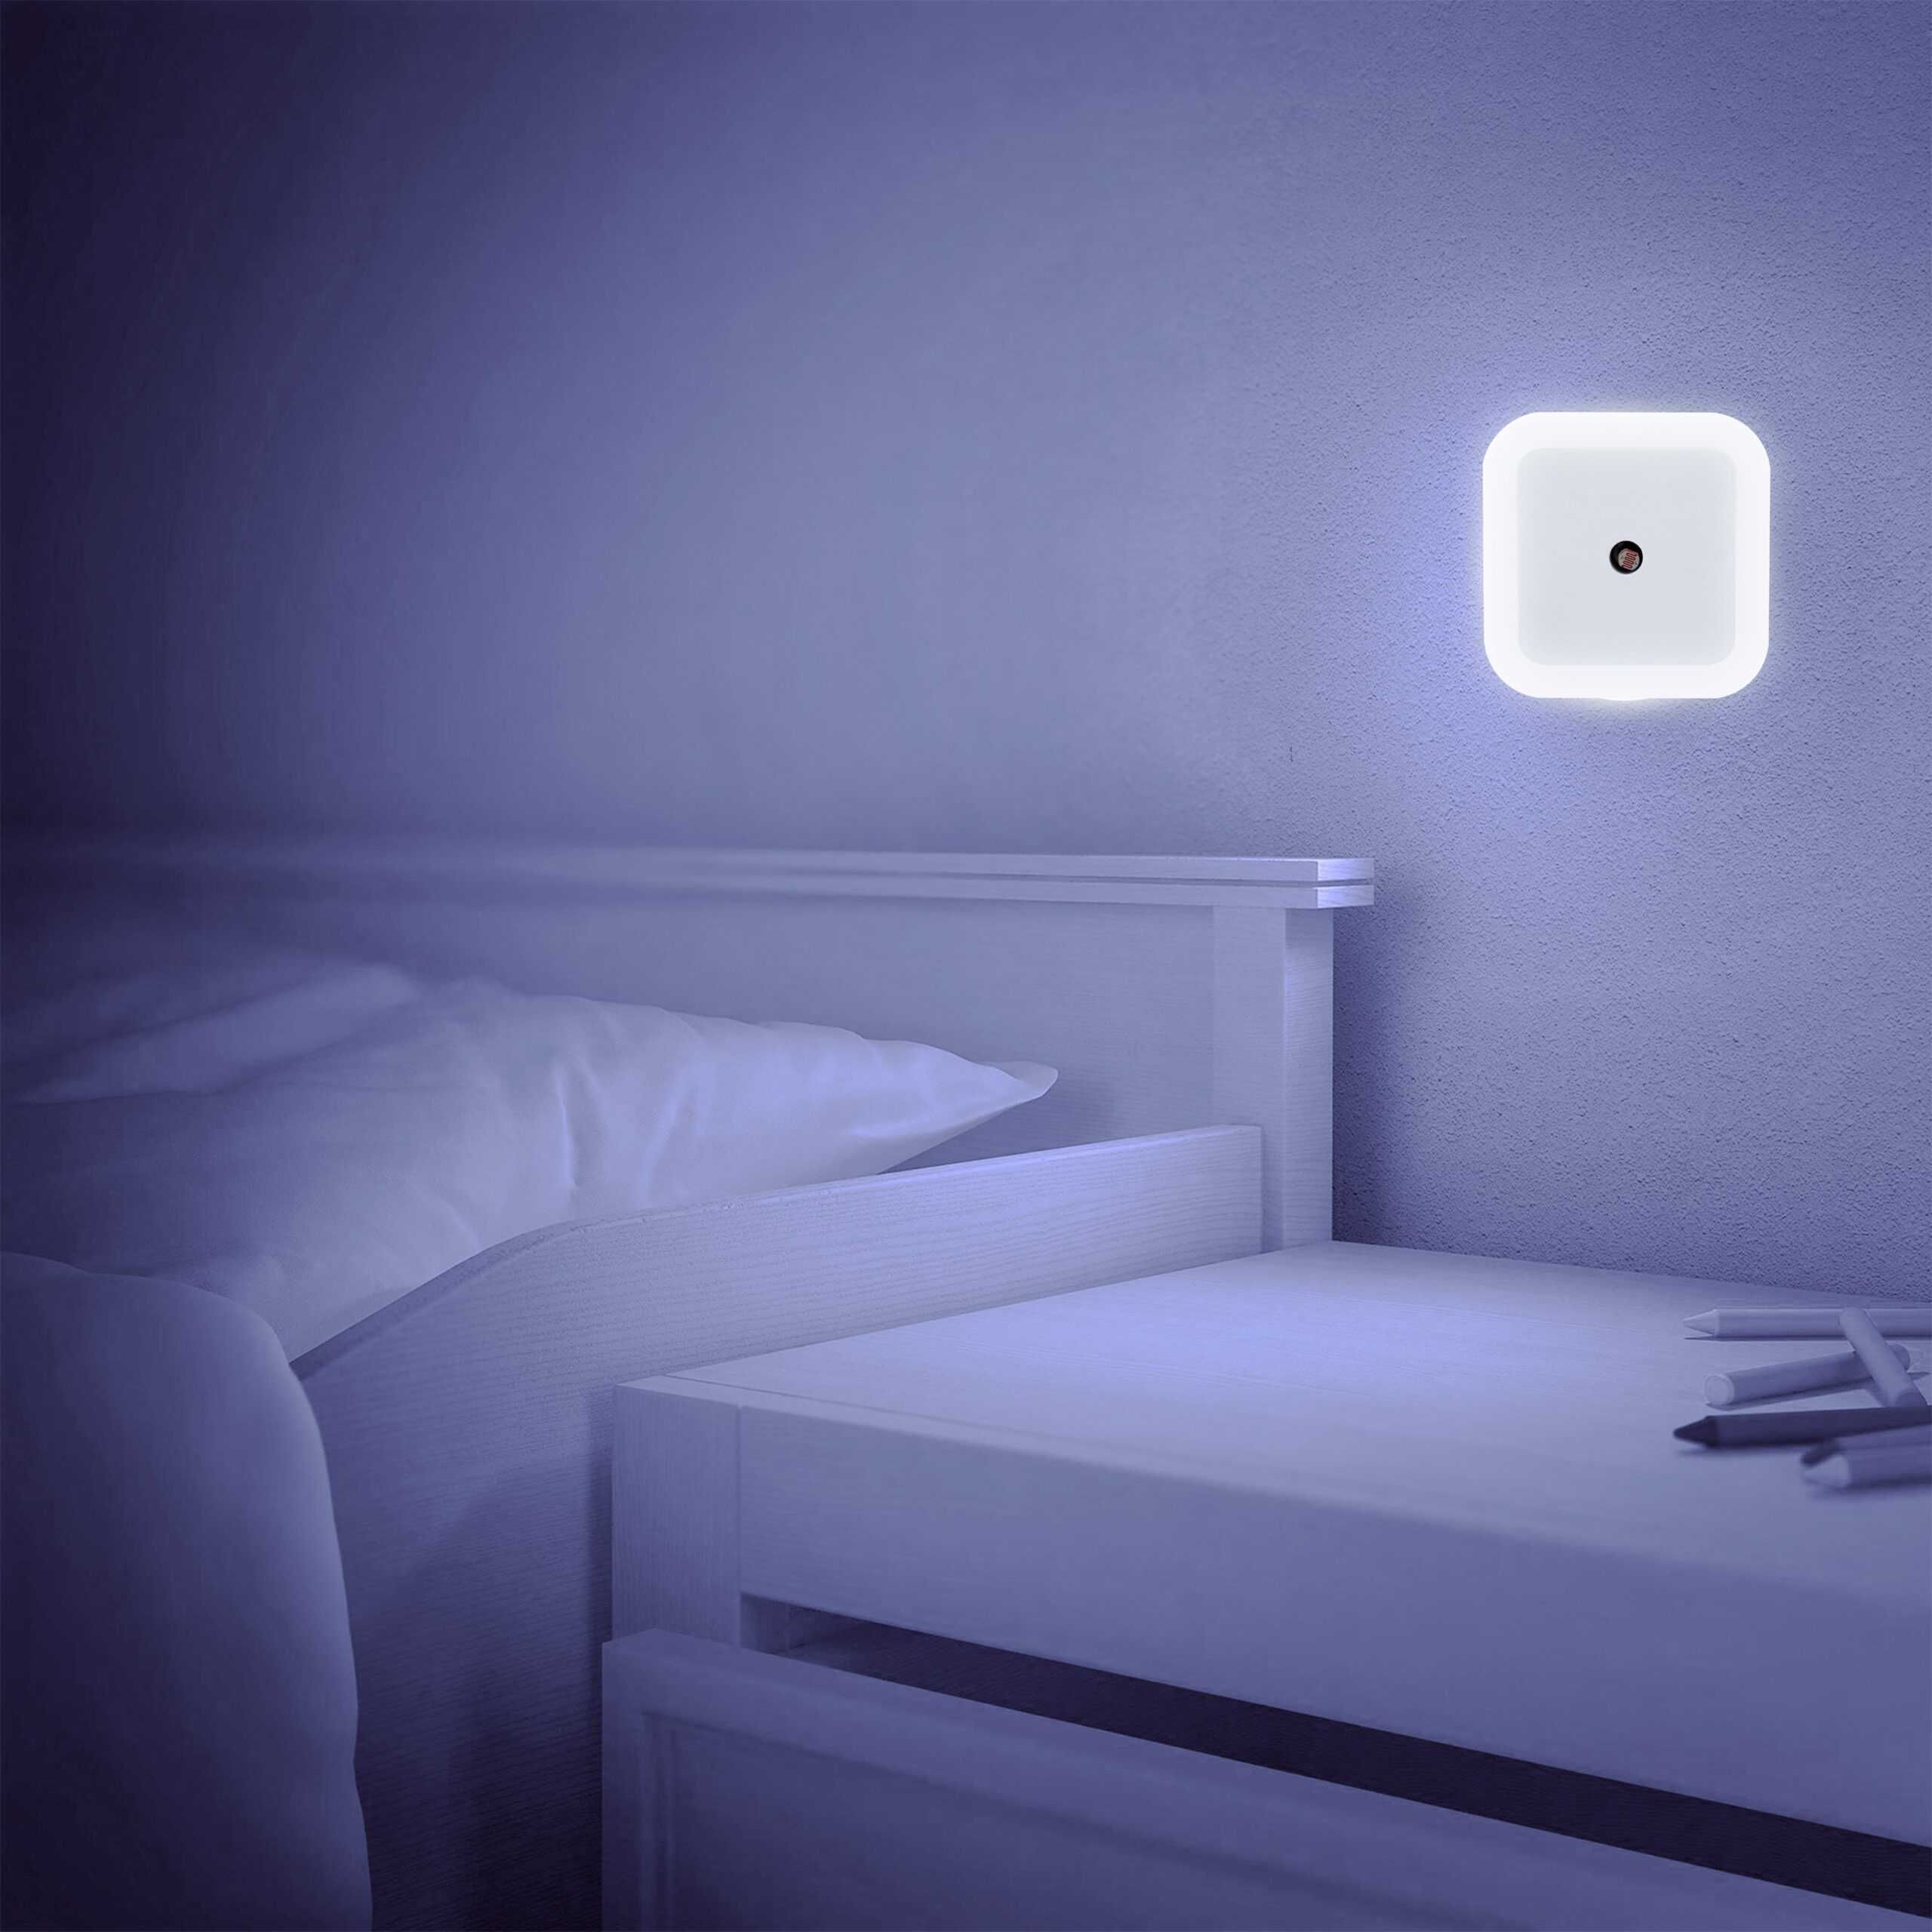 Kontaktowa lampka nocna LED 1W kwadratowa